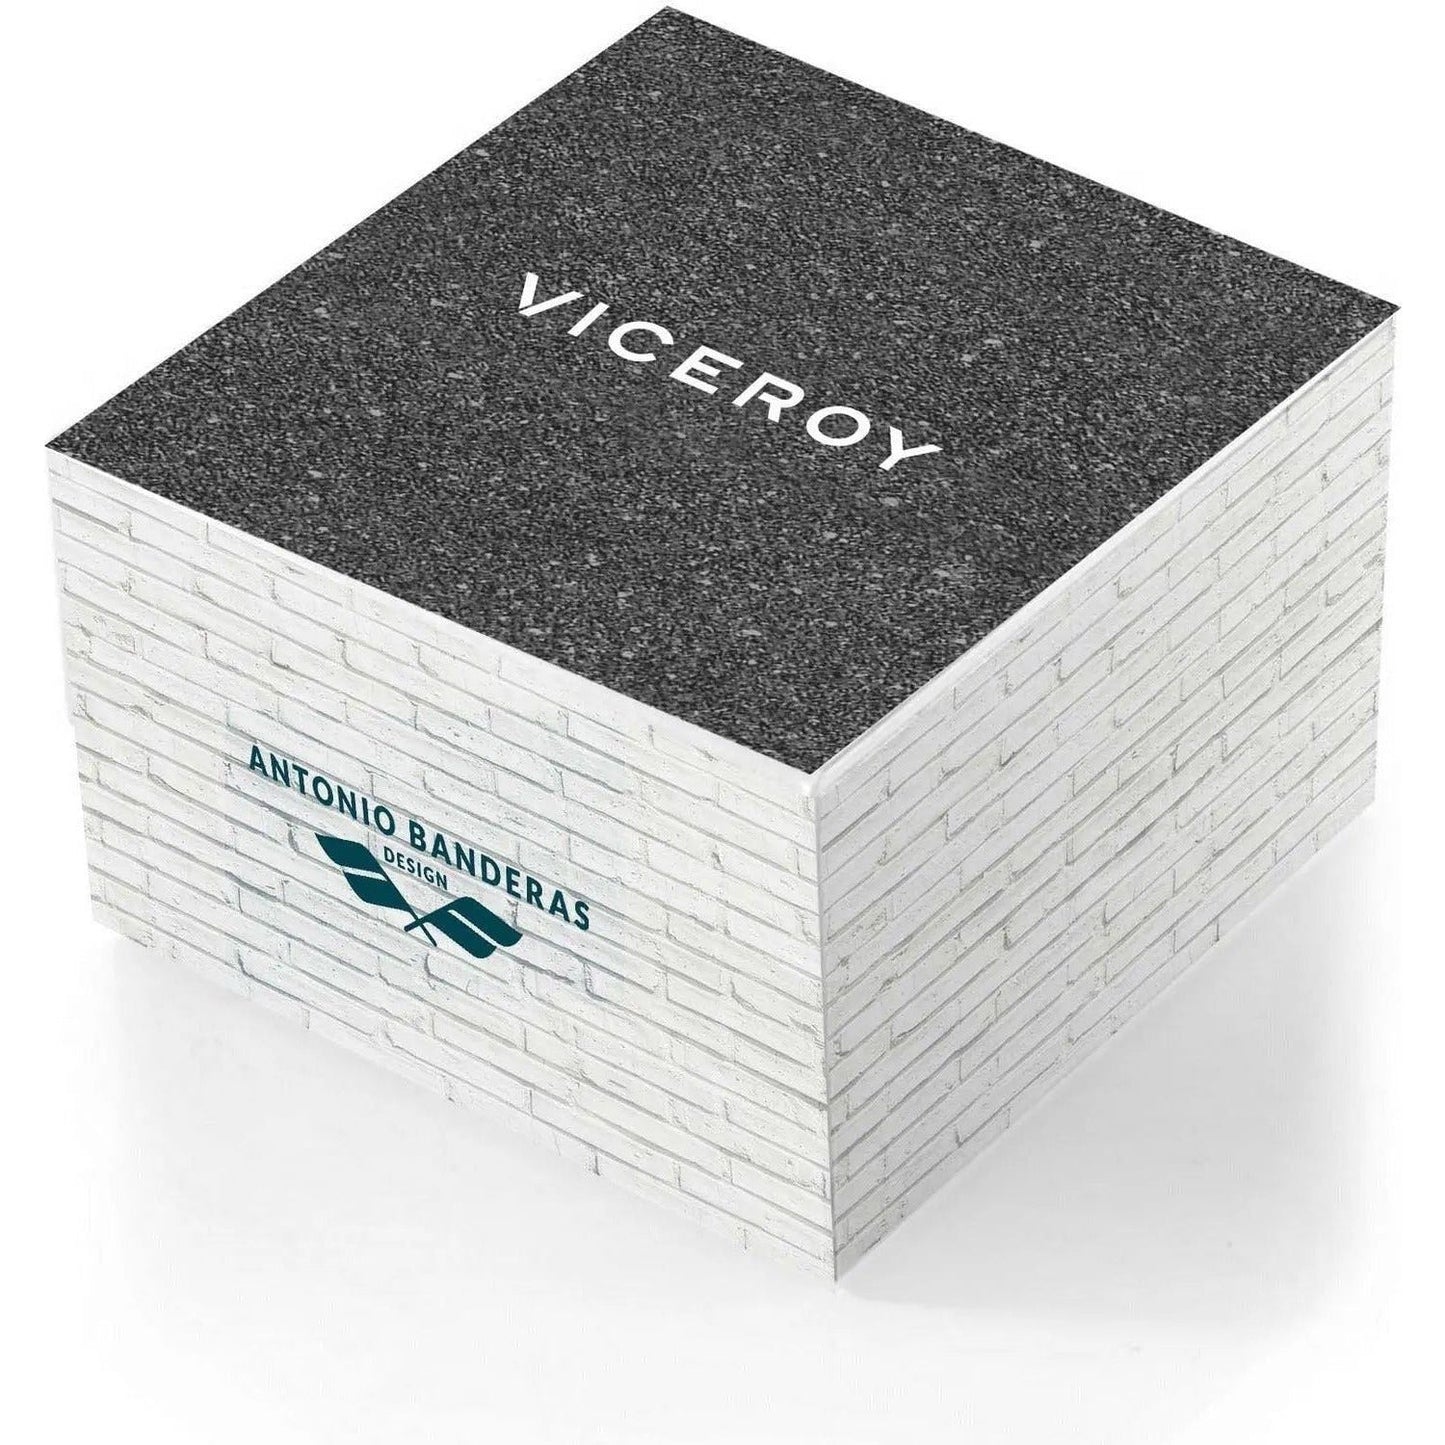 VICEROY WATCHES VICEROY Mod. 401053-57 WATCHES viceroy-mod-401053-57 VICEROY-WATCHES-VICEROY-Mod.-401053-57-McRichard-Designer-Brands-1682947110.jpg